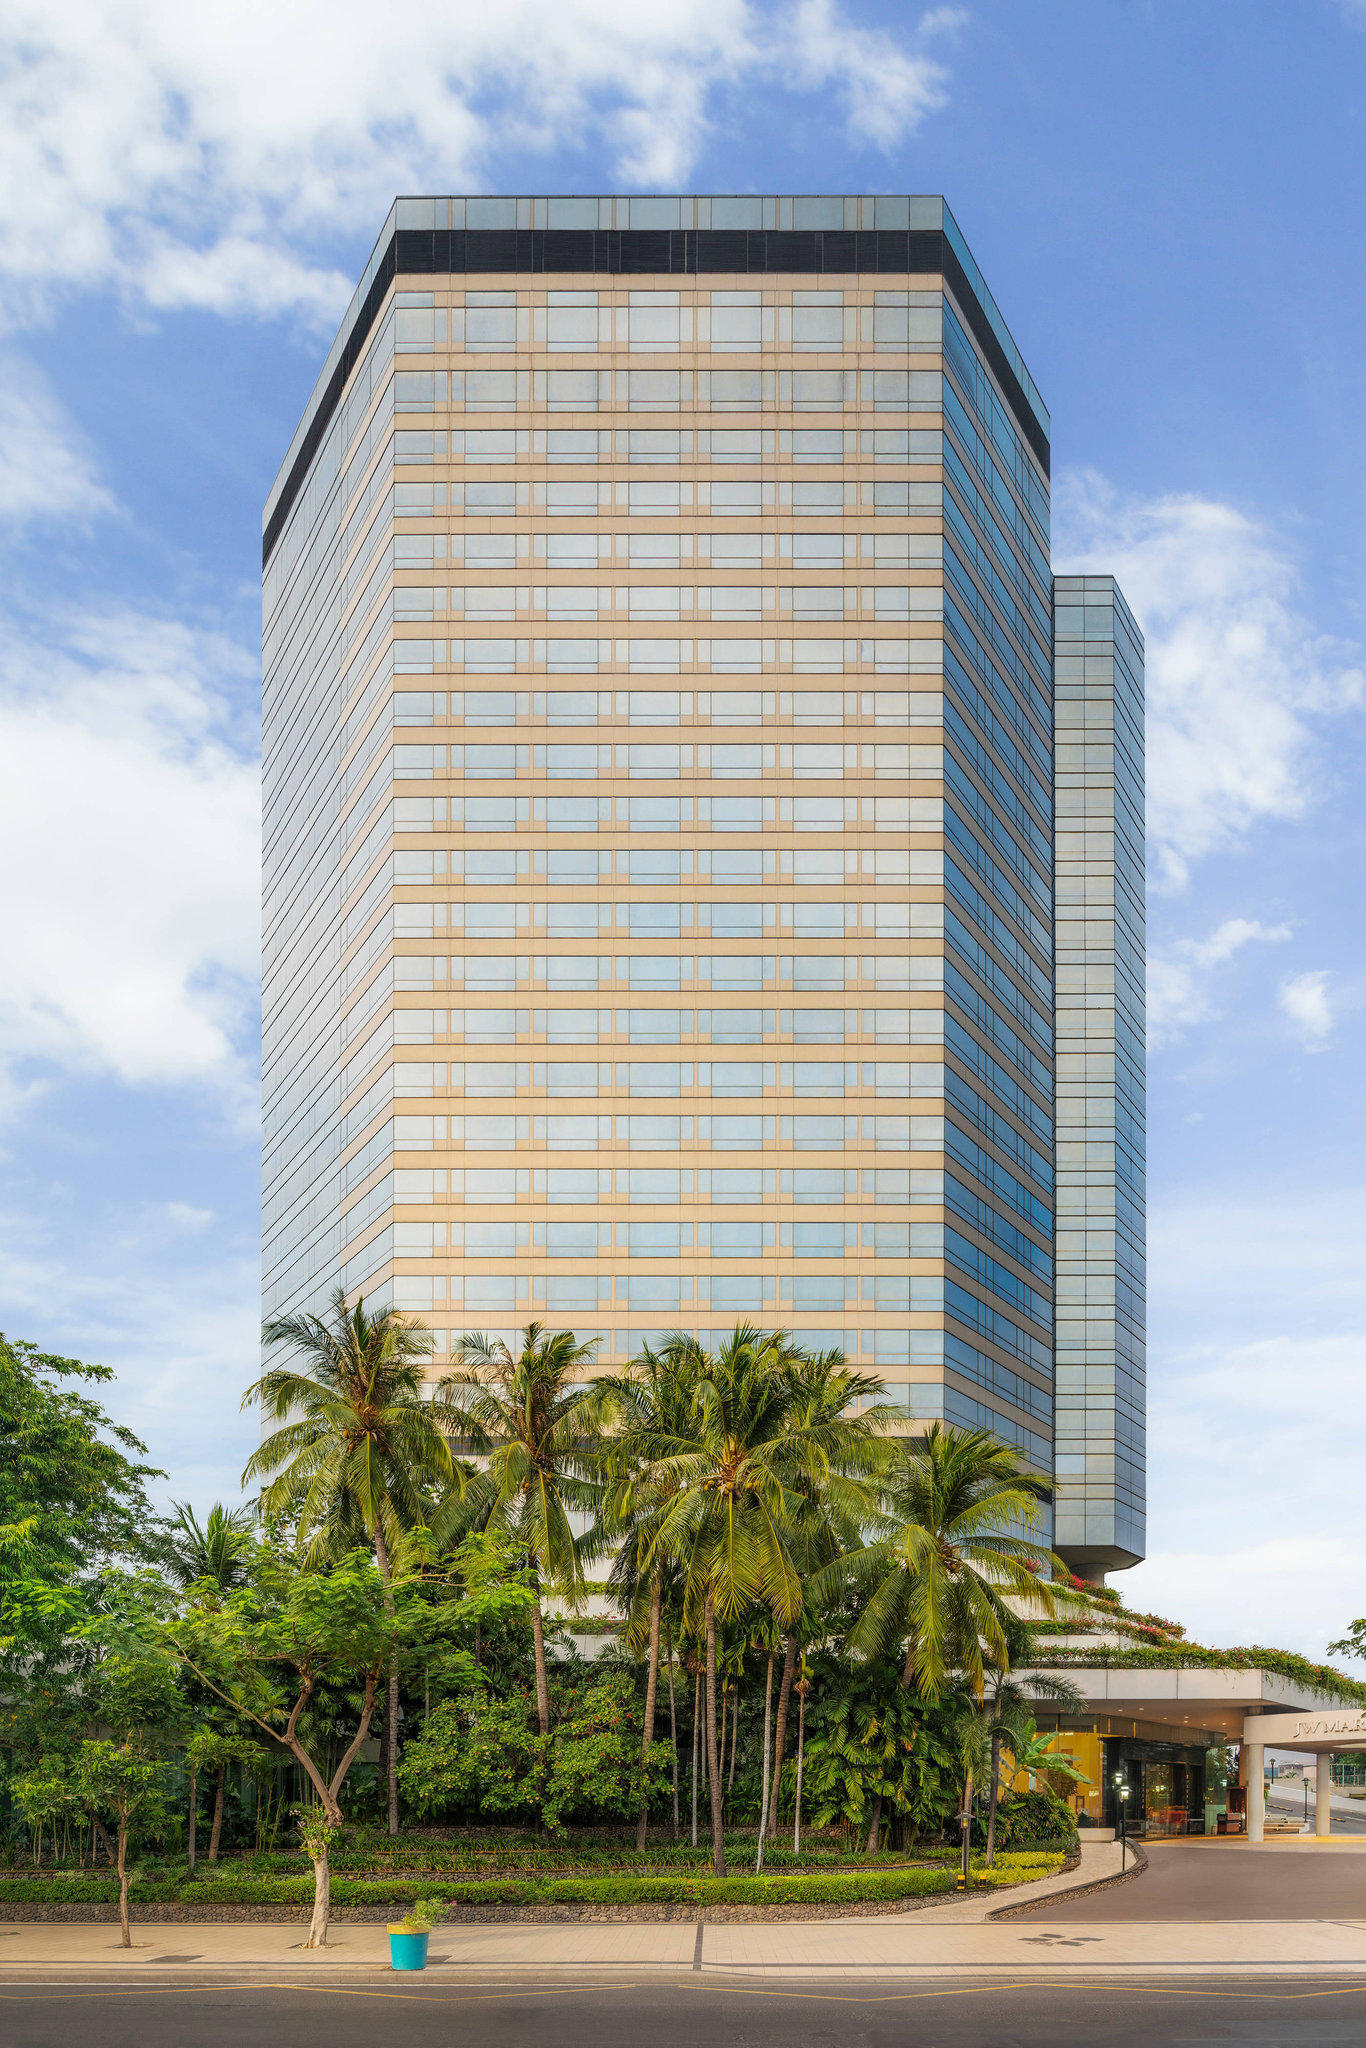 JW Marriott Hotel Surabaya